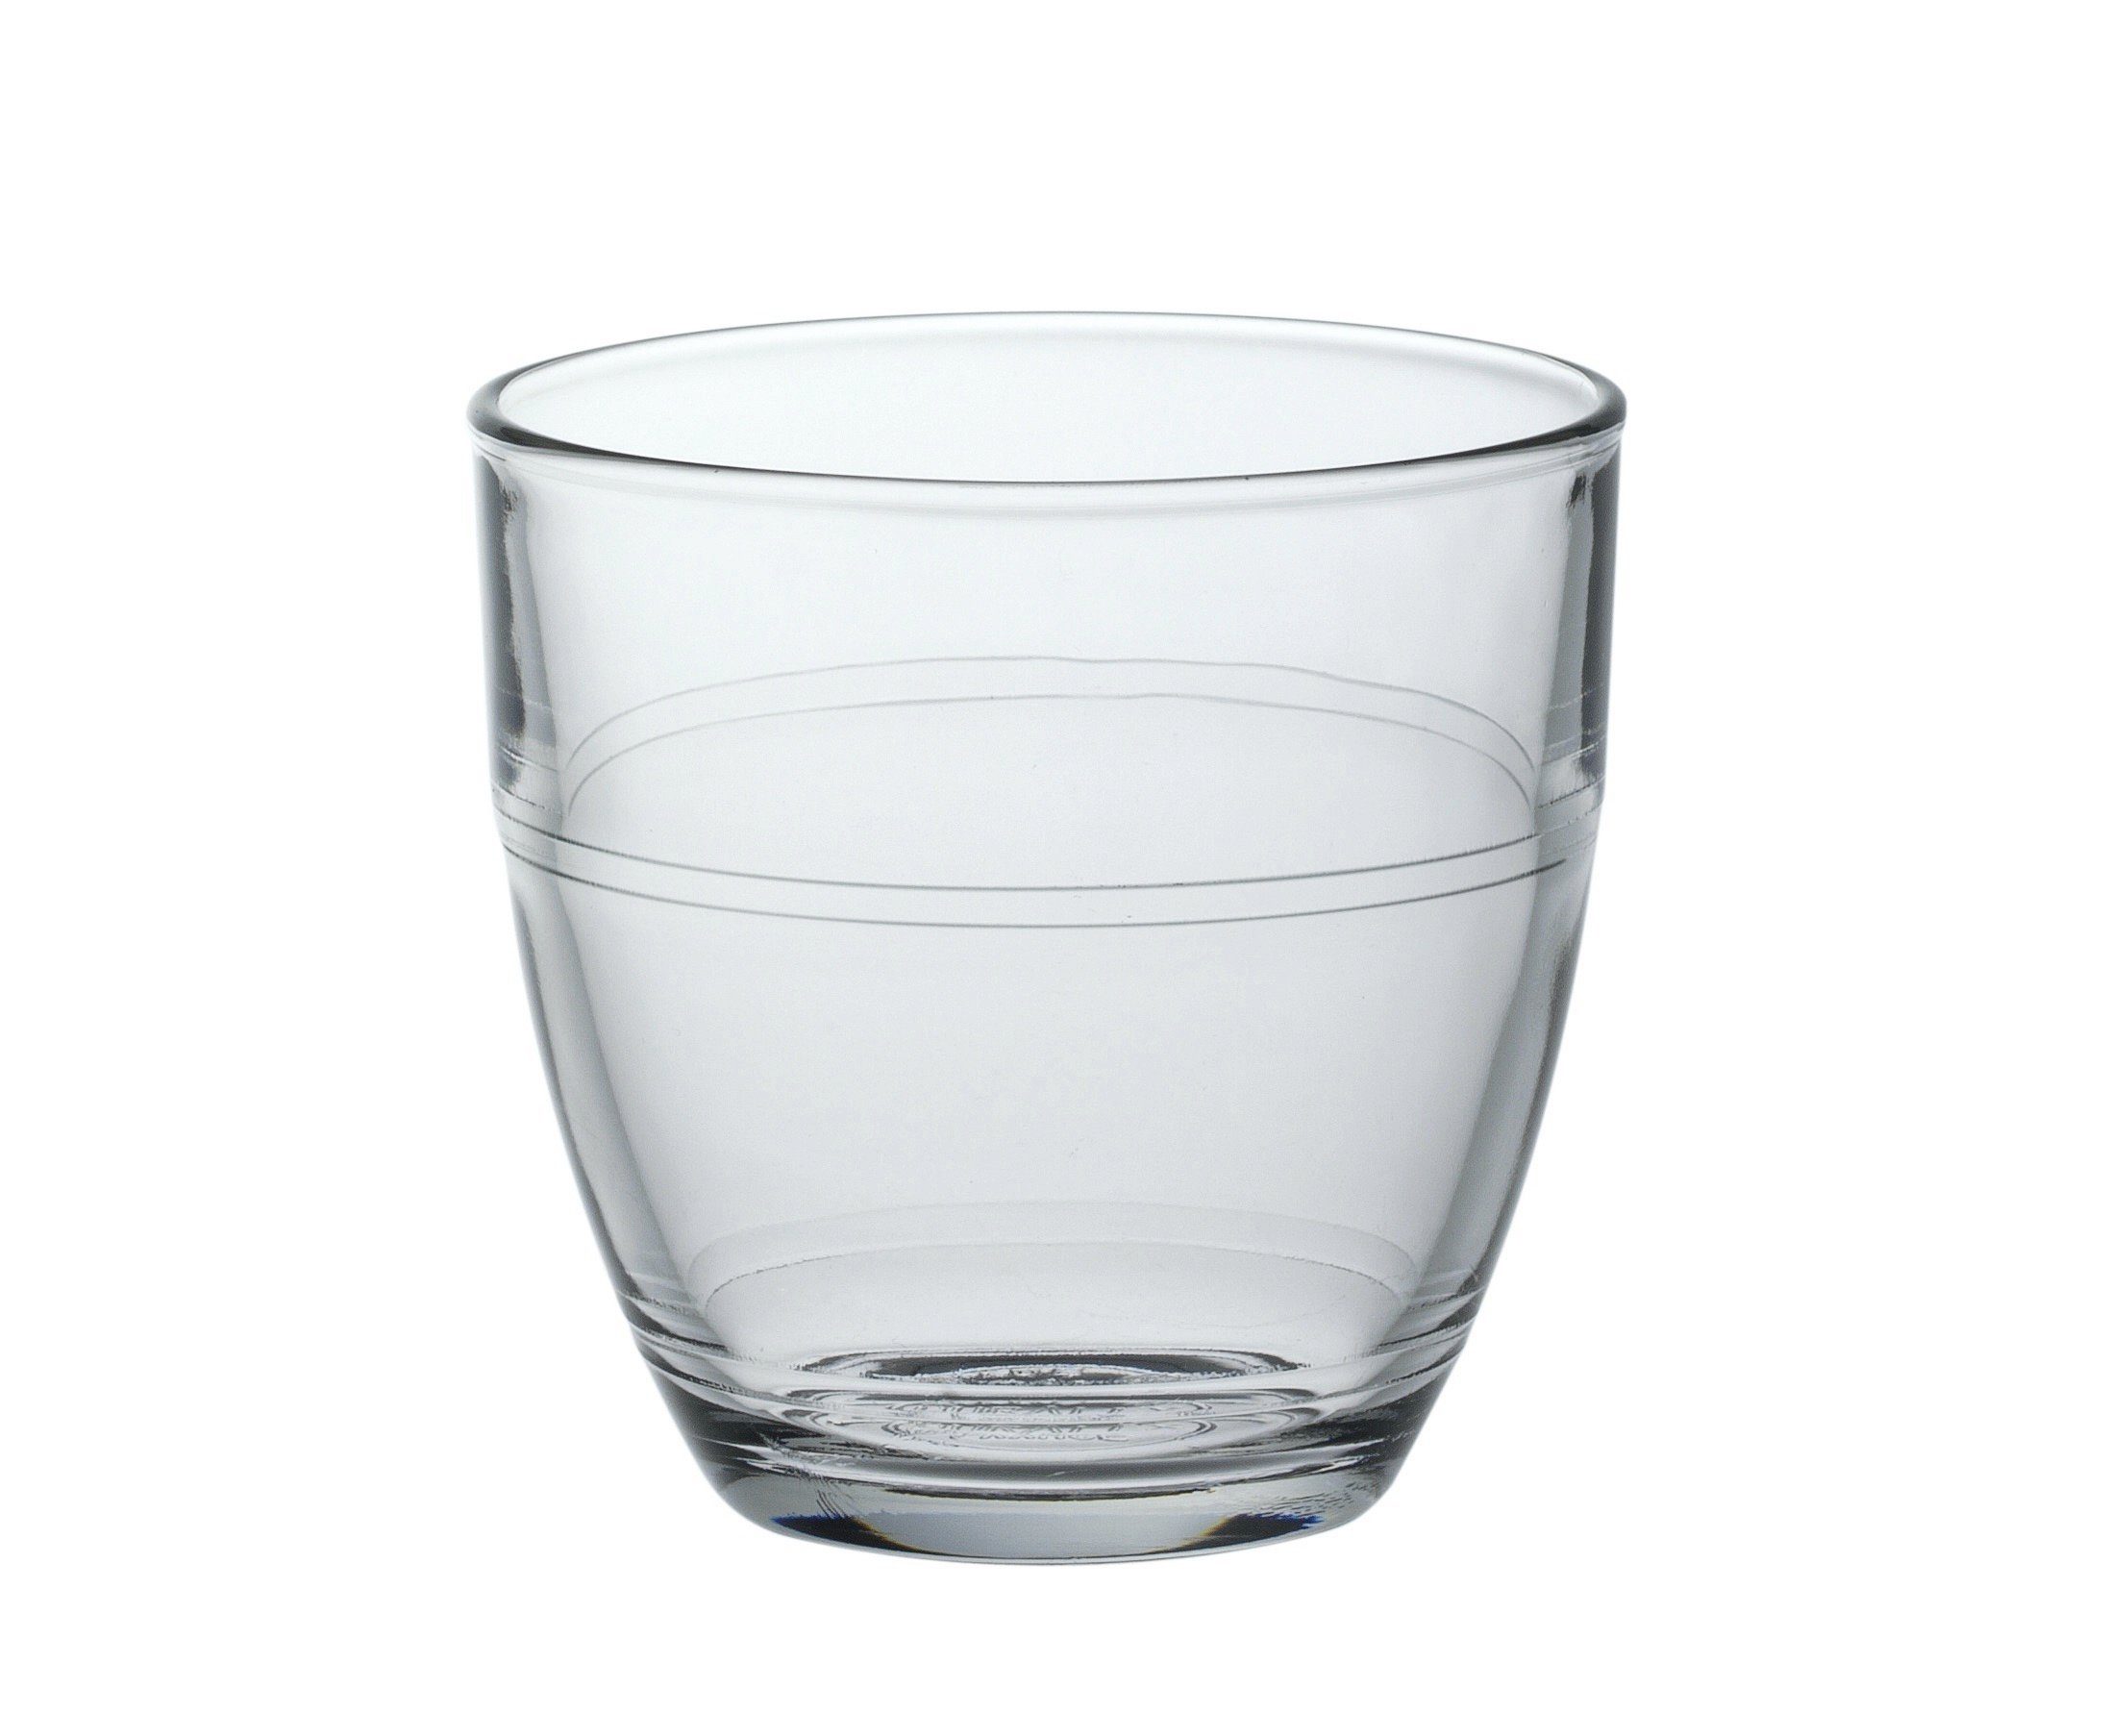 gehärtet Tumbler Trinkglas gehärtet, transparent 90ml Glas Gigogne, Stück 6 stapelbar Duralex Glas Tumbler-Glas